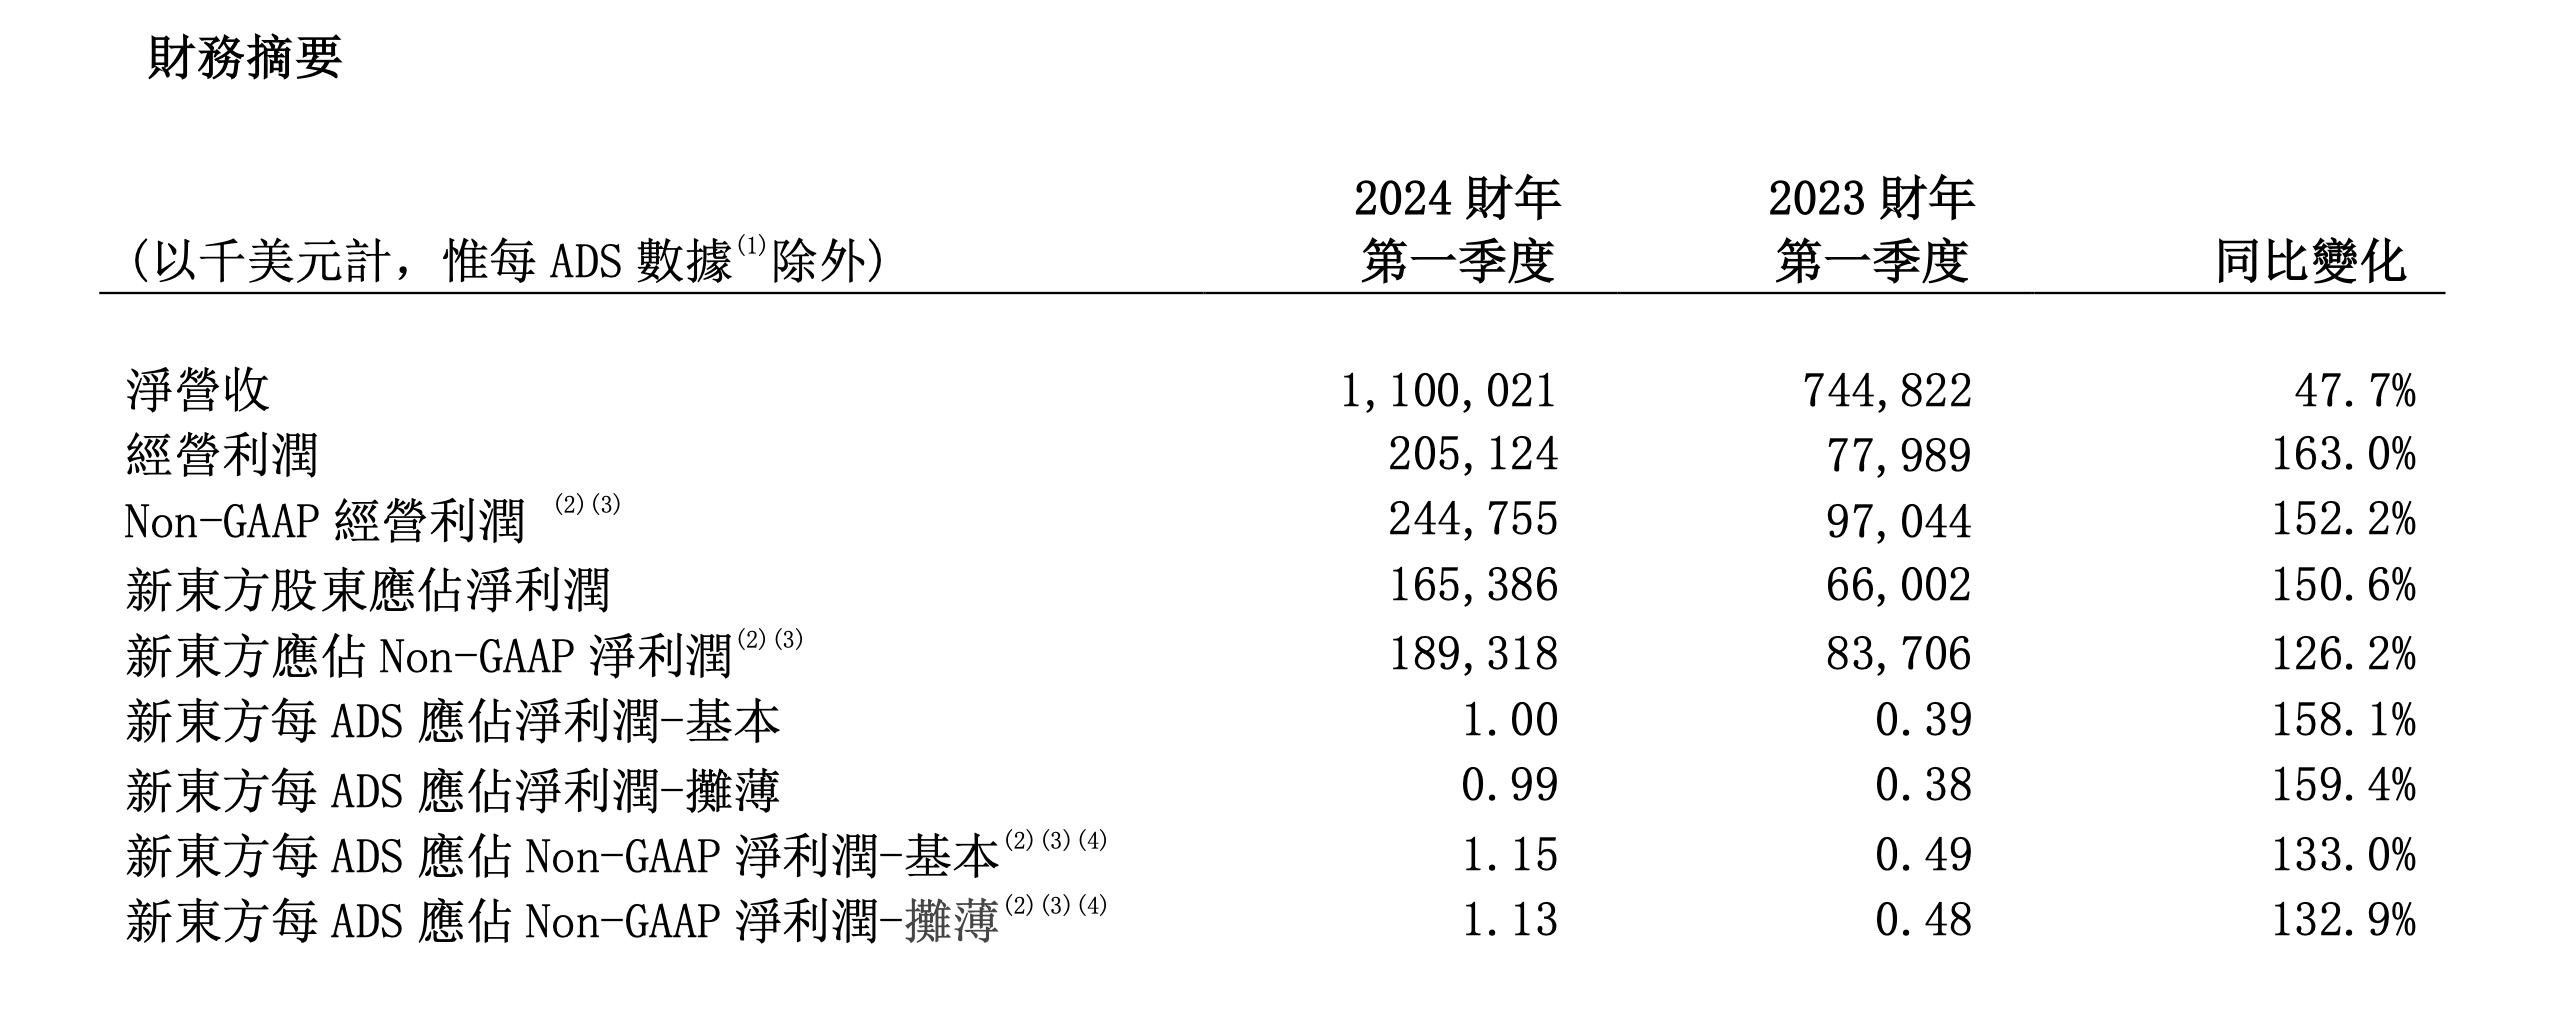 新东方业务多点布局 2024财年一季度营收增长47.7%